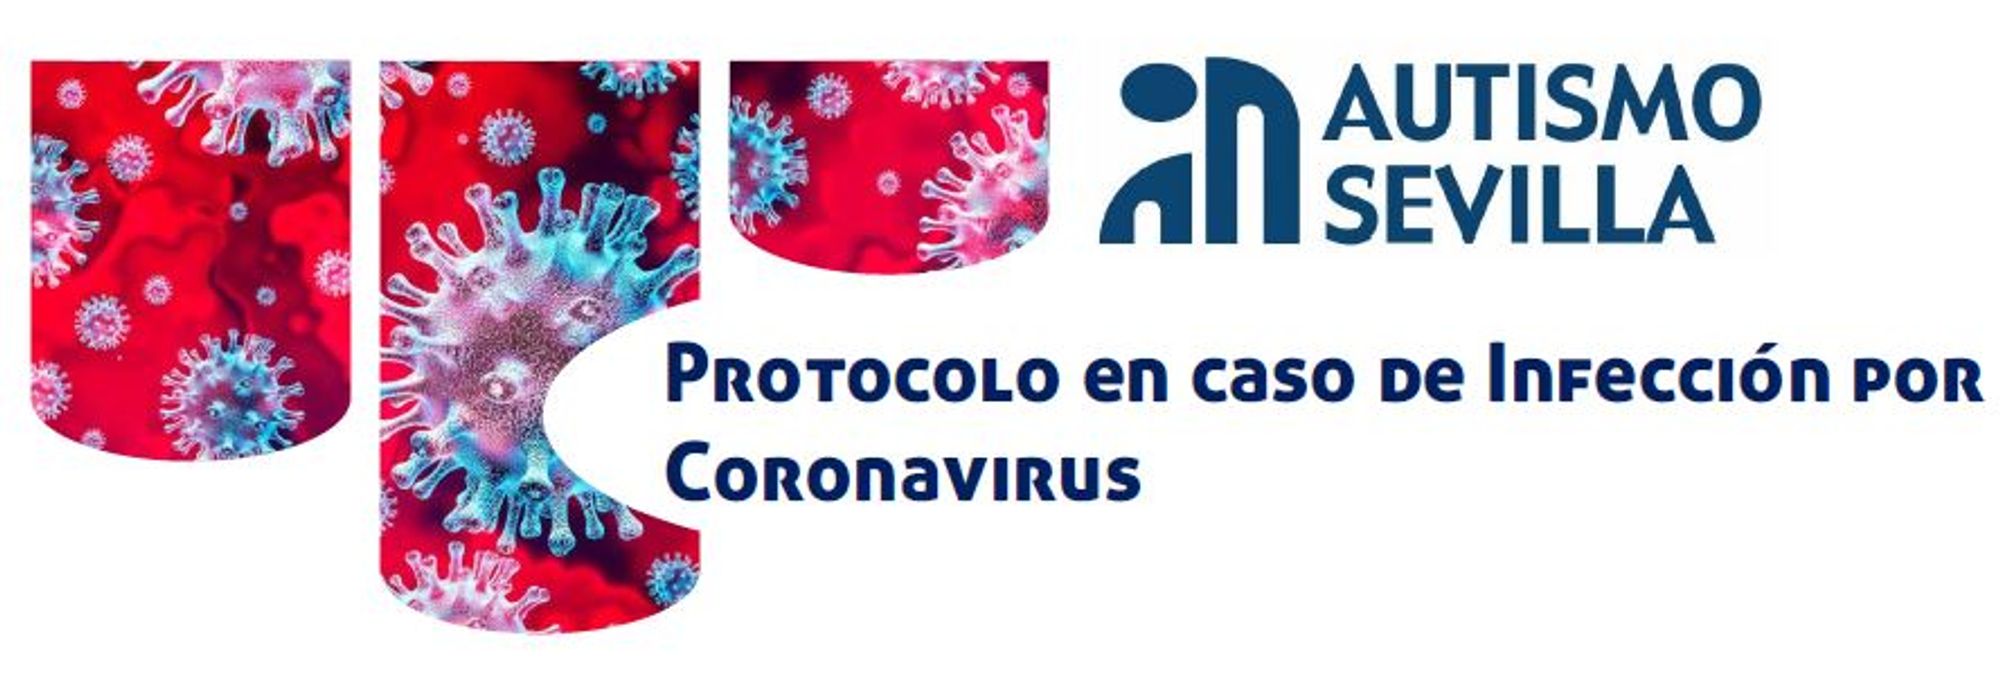 Protocolo en caso de Infección por Coronavirus